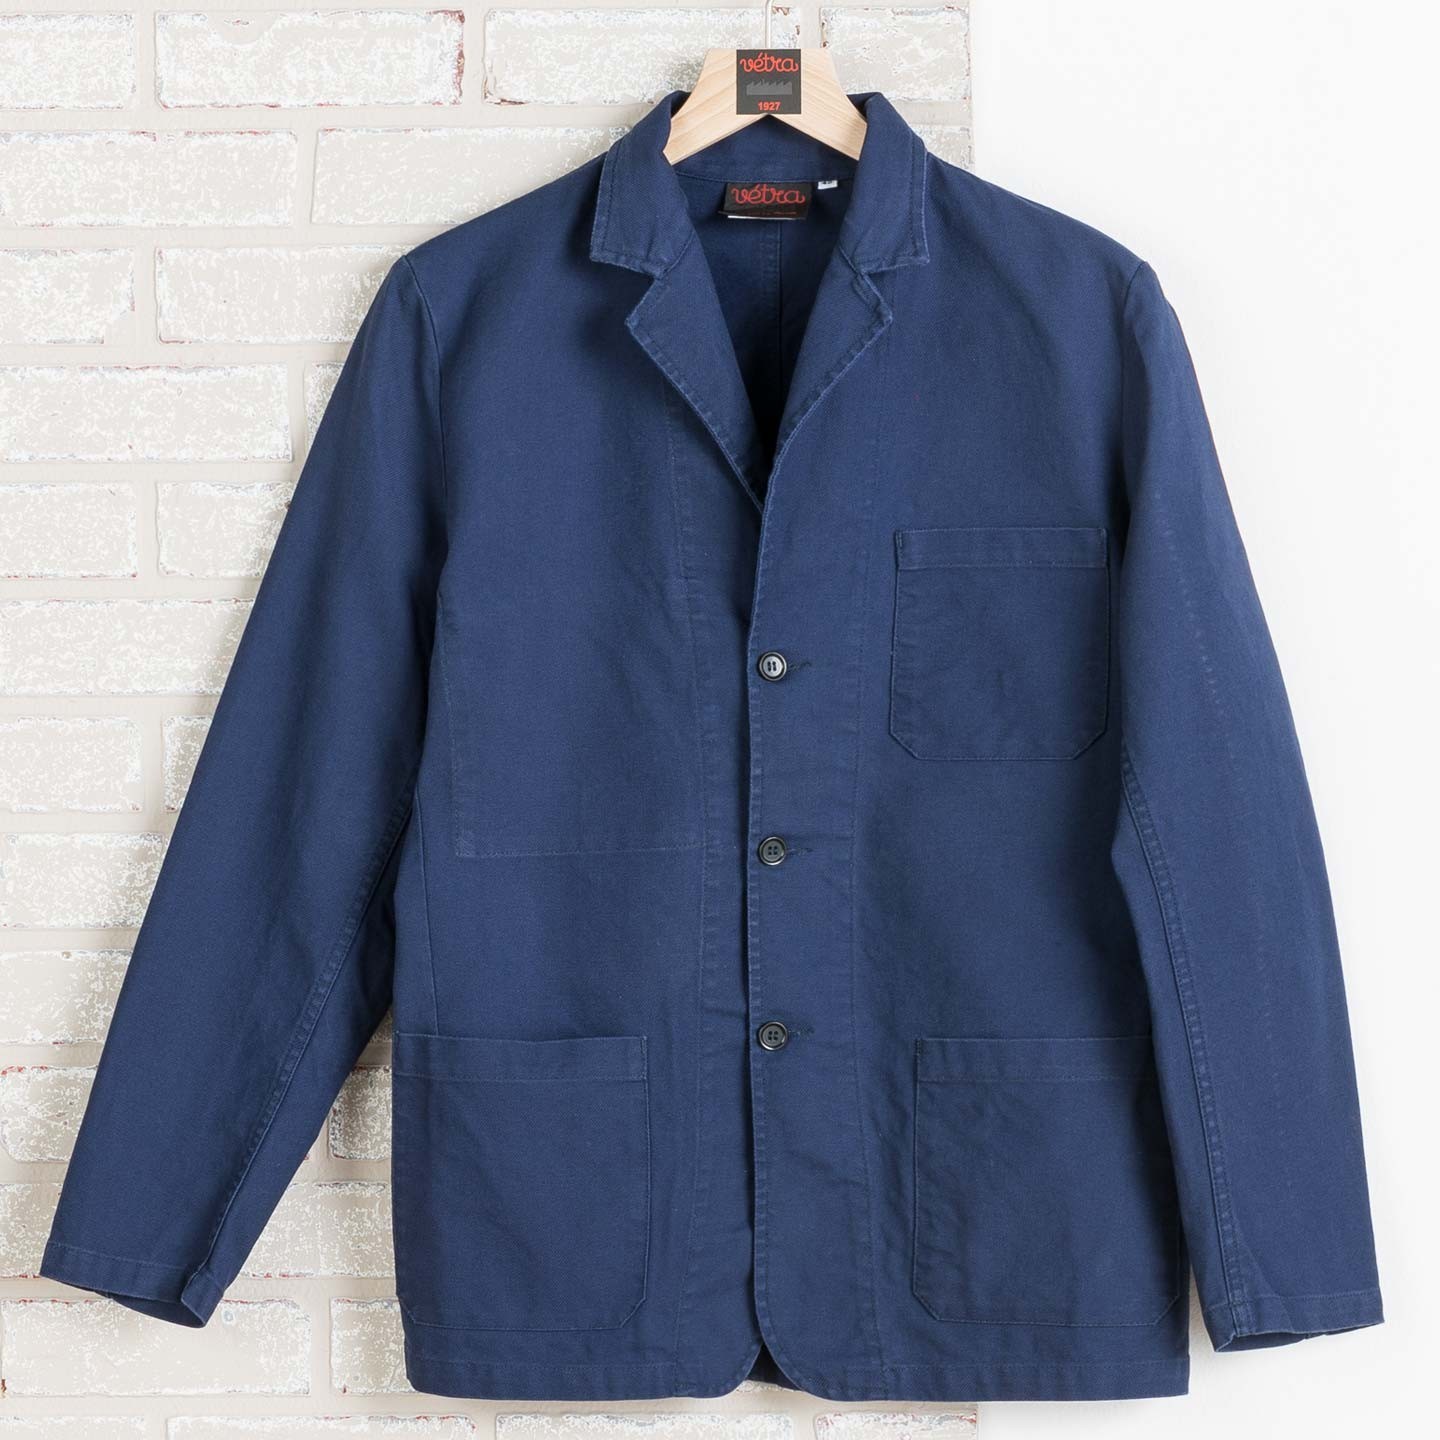 Blazer workwear jacket in twill fabric 1C/24 navy